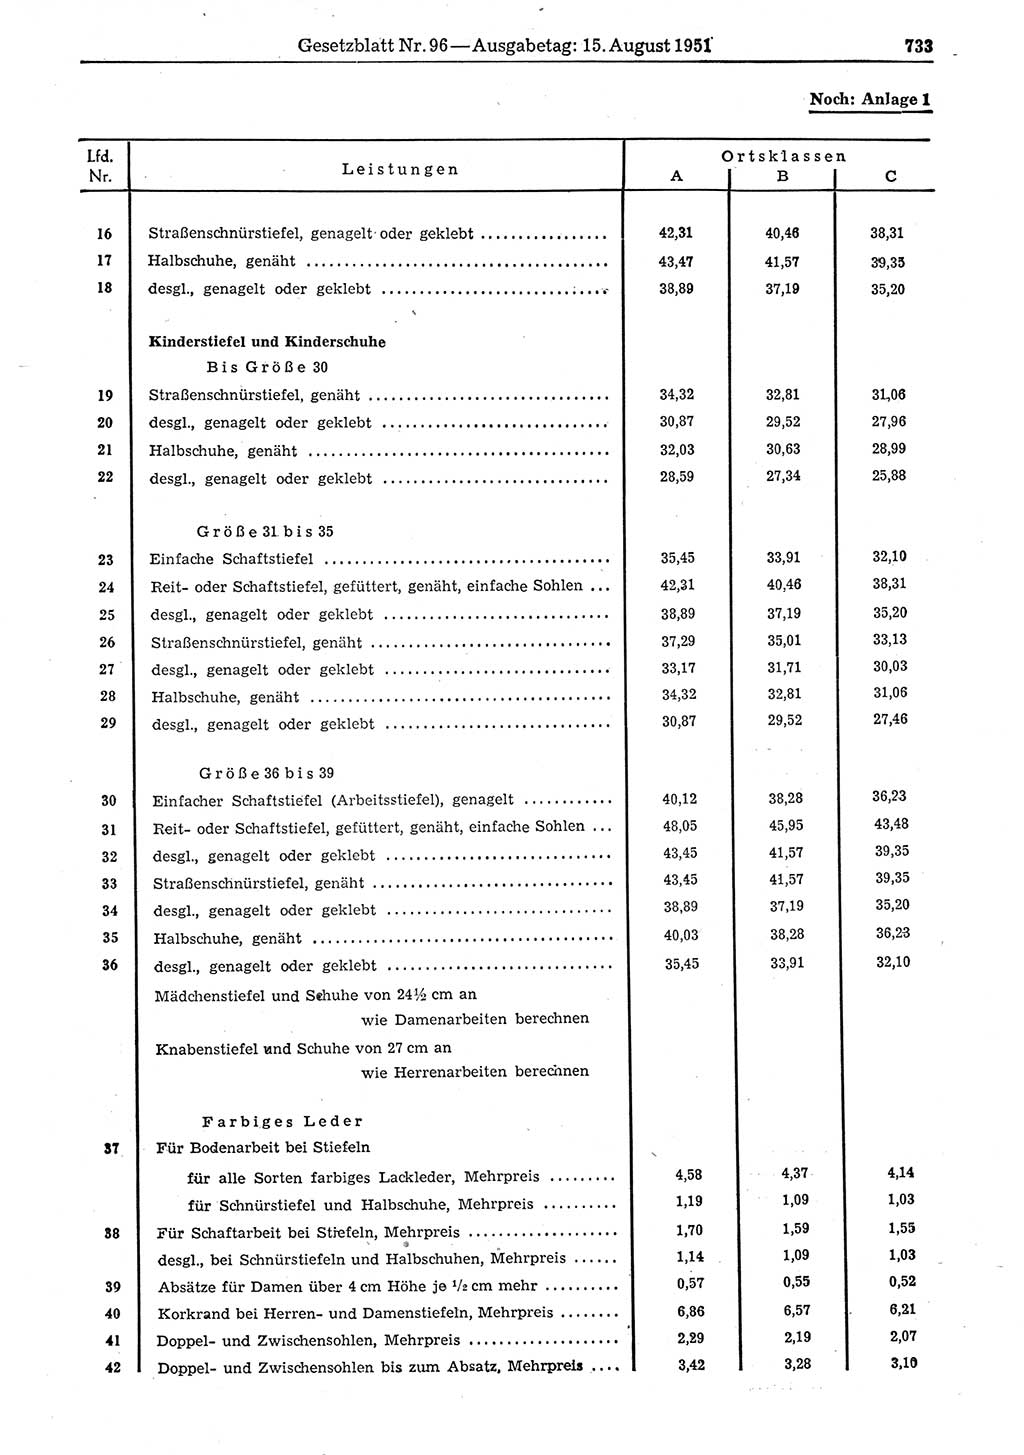 Gesetzblatt (GBl.) der Deutschen Demokratischen Republik (DDR) 1951, Seite 733 (GBl. DDR 1951, S. 733)